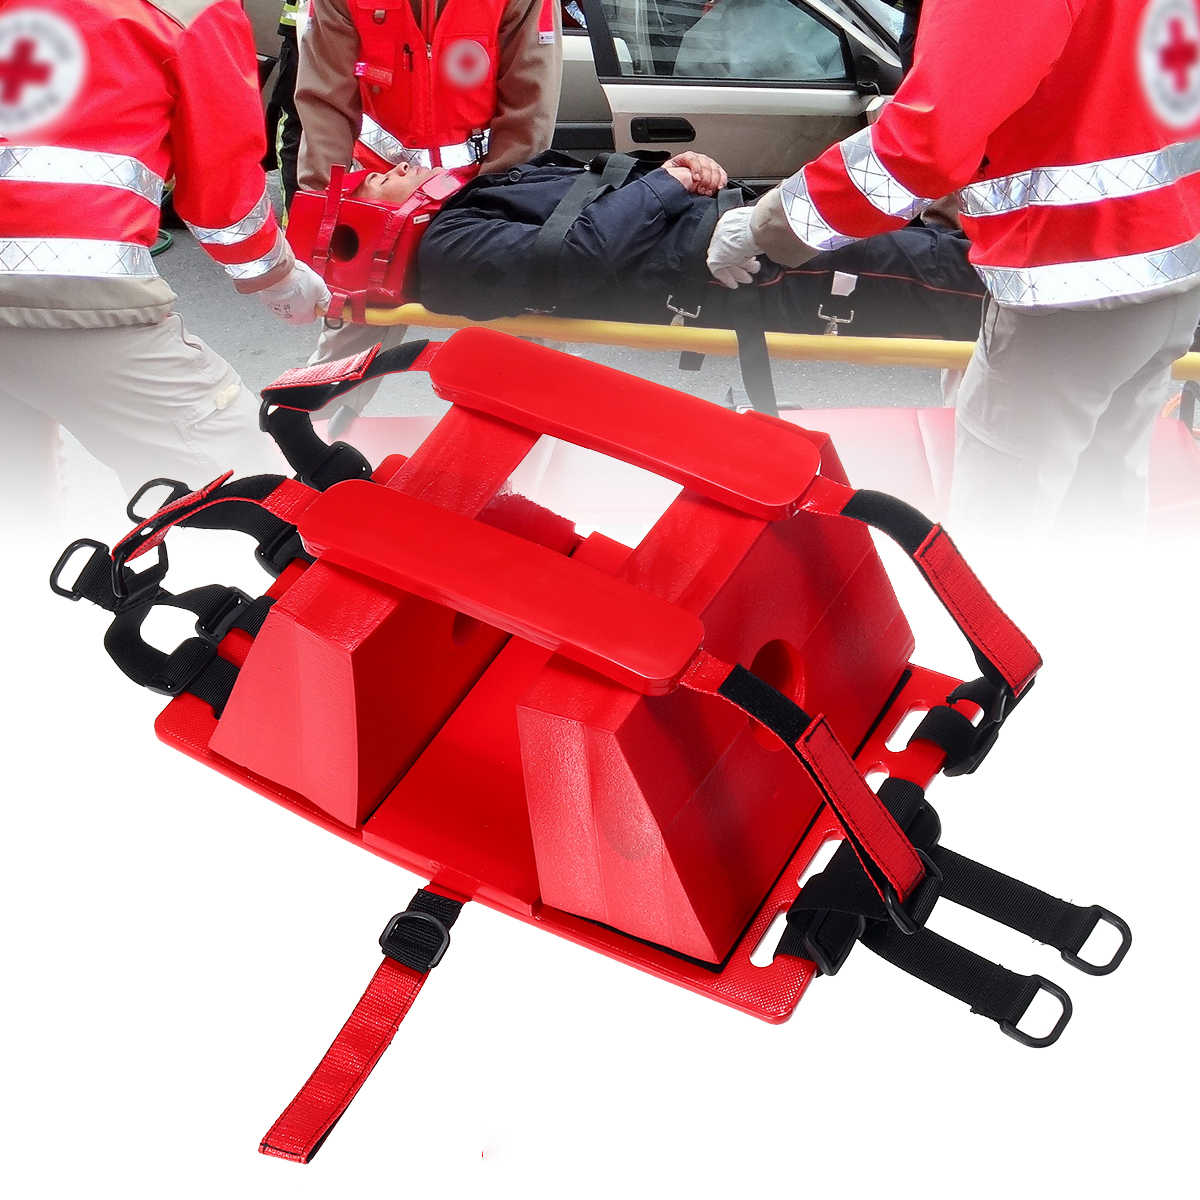 【ที่วางหัวเปลหาม】หัวหน้าหน่วยกู้ภัยฉุกเฉินสีแดงที่ใส่น้ำหัวหน้ากู้ภัยเปลคณะ Holder สระว่ายน้ำเสริมอุปกรณ์สำหรับ EMS / EMT ซัพพลาย